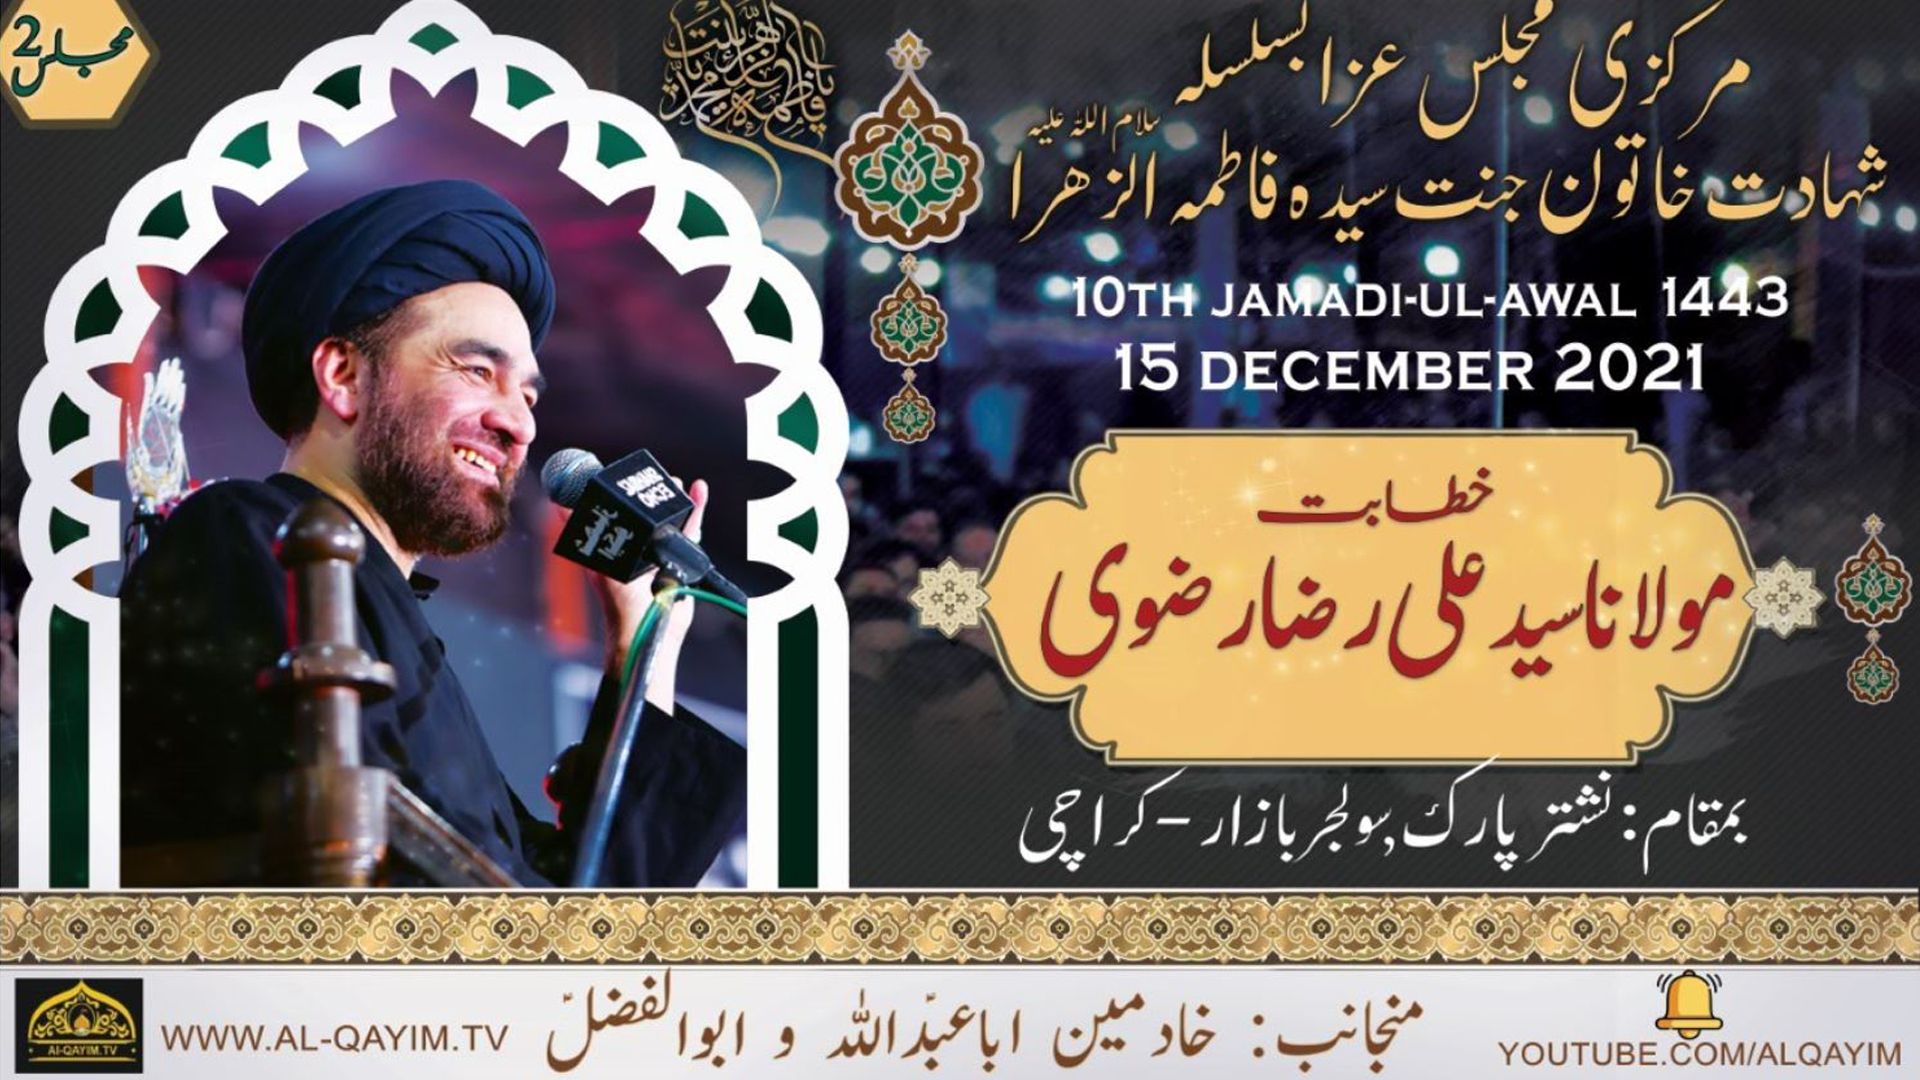 Ayyam-e-Fatima Majlis #2 | Maulana Ali Raza Rizvi | 10 Jamadi Awal 1443/2021 - Nishtar Park, Karachi